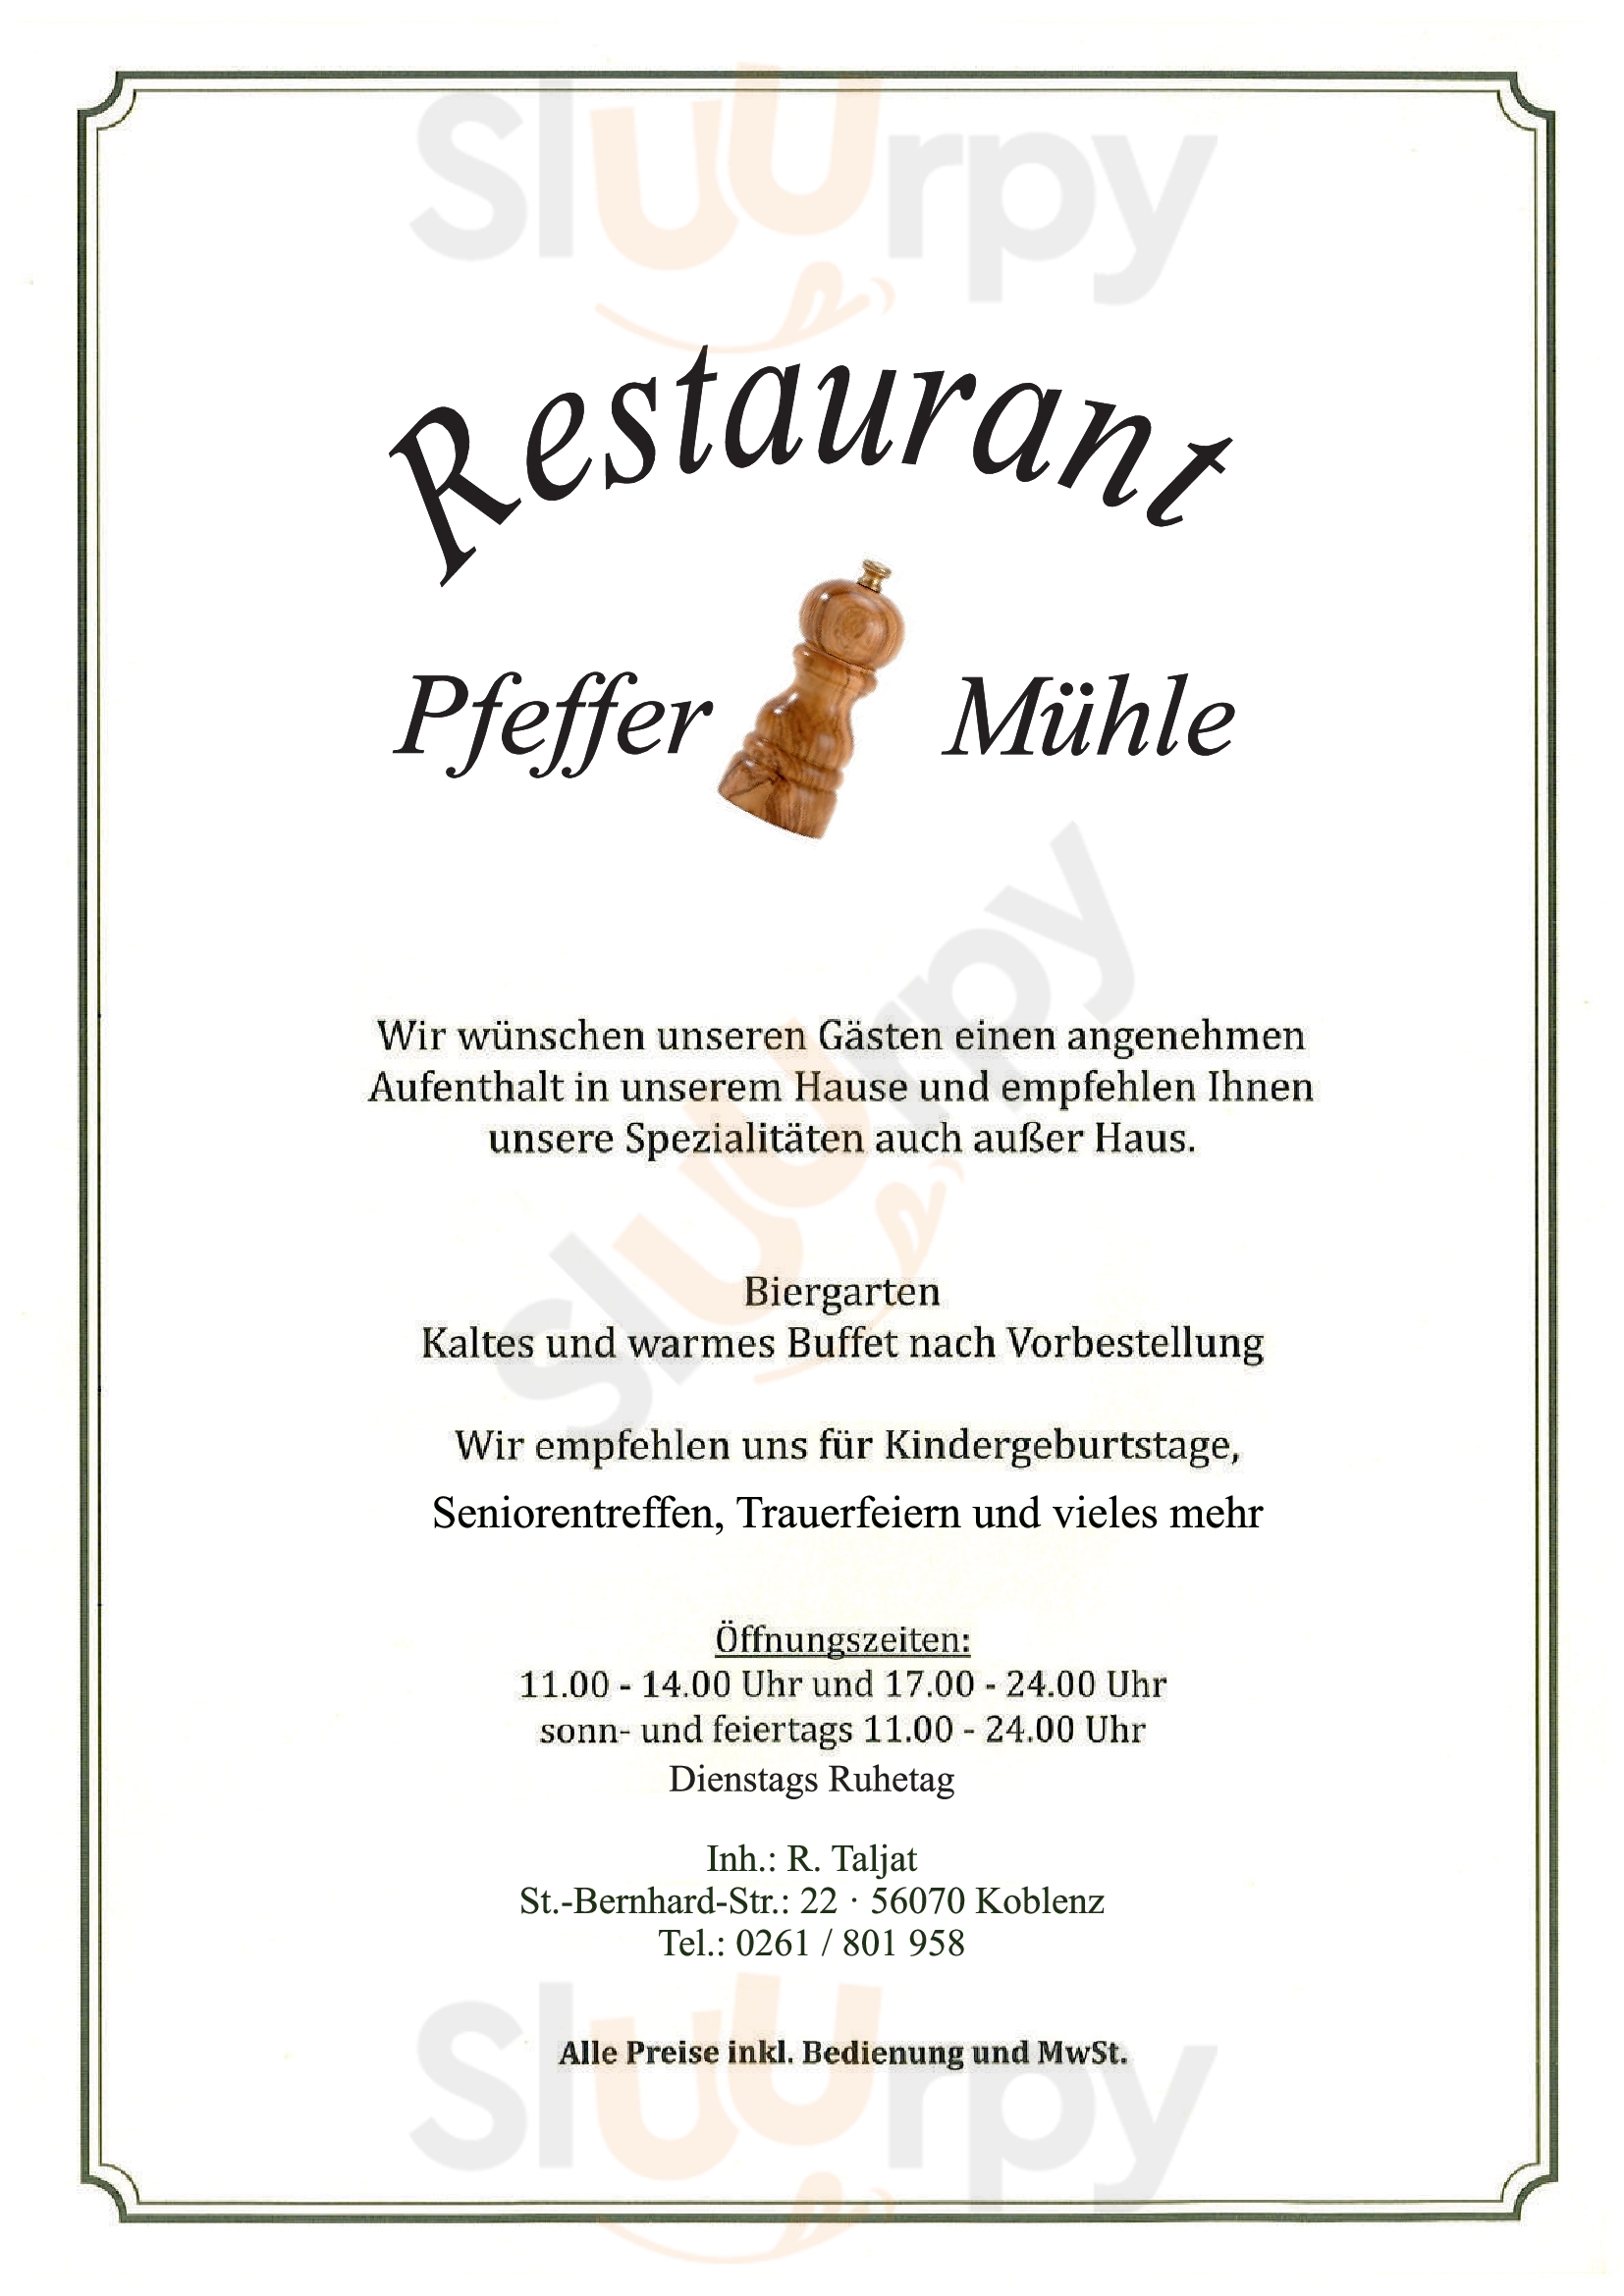 Restaurant Pfeffermühle Koblenz Menu - 1